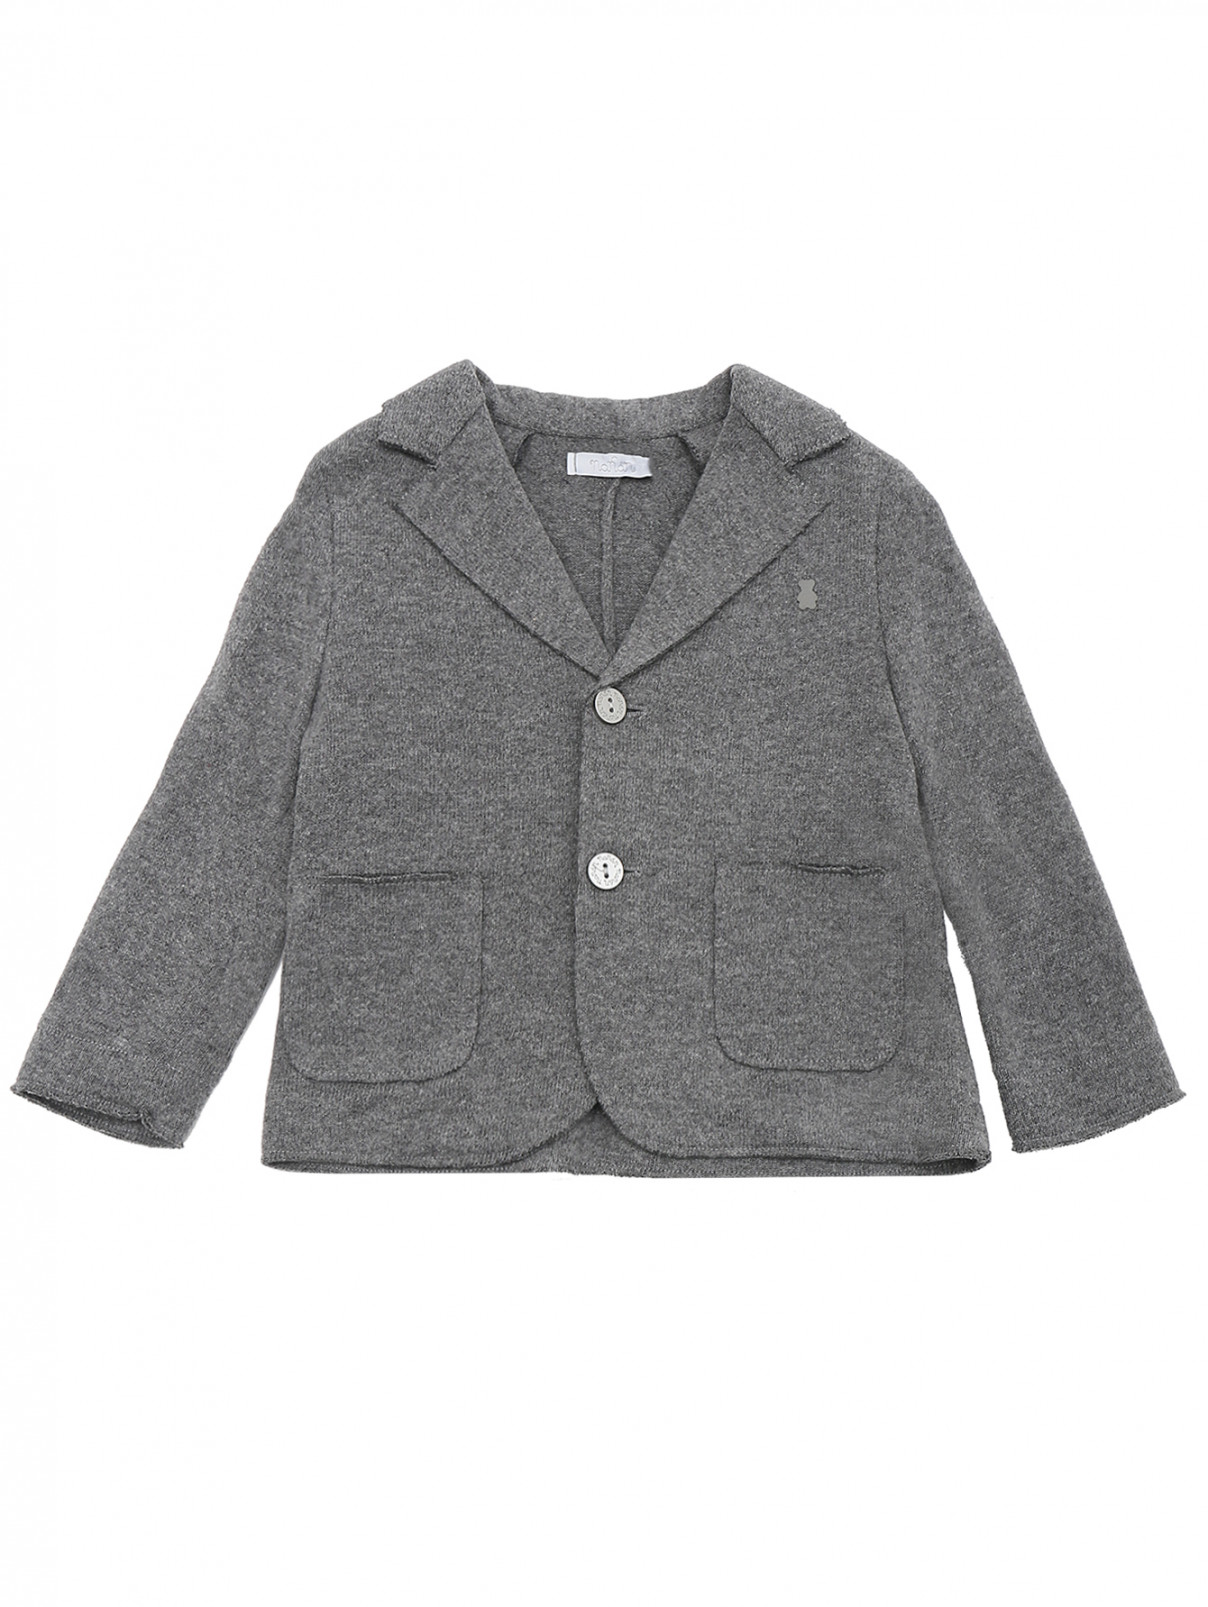 Пиджак трикотажный с карманами Nanan  –  Общий вид  – Цвет:  Серый